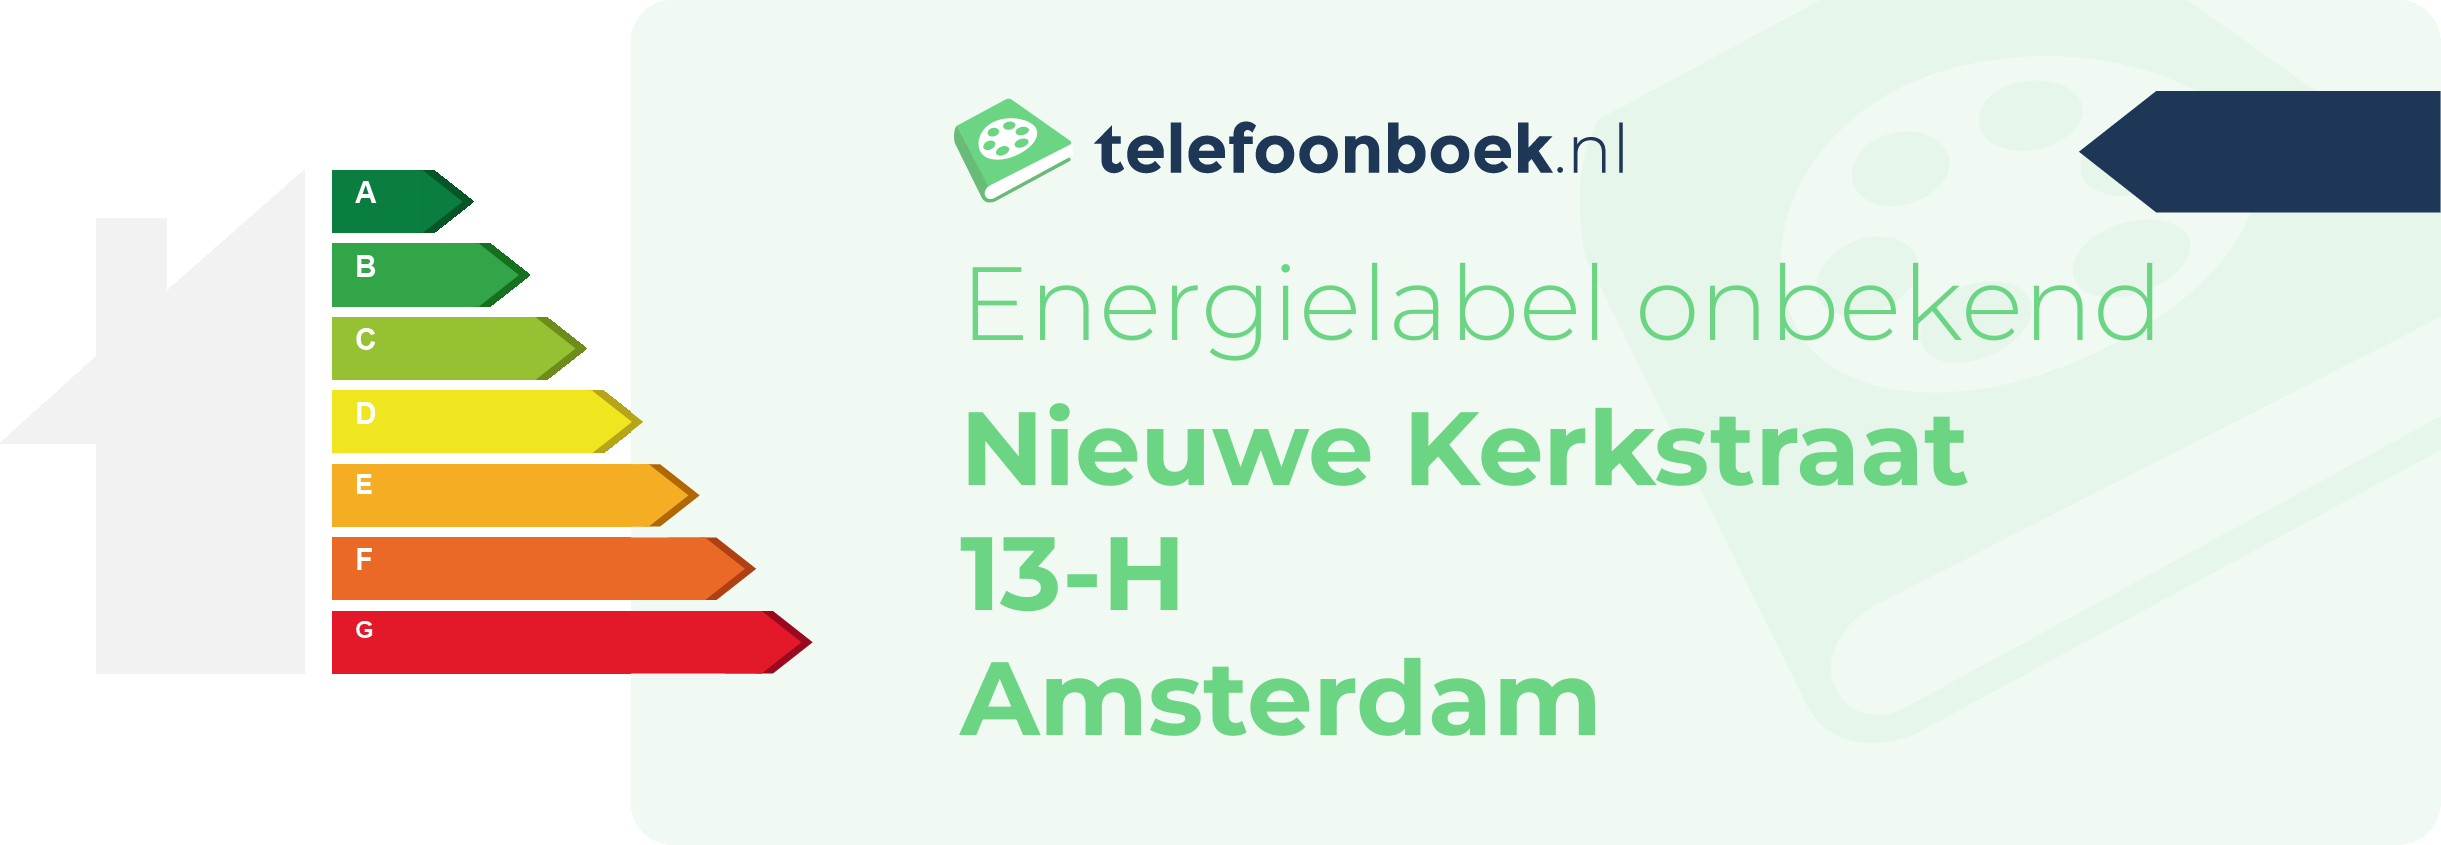 Energielabel Nieuwe Kerkstraat 13-H Amsterdam